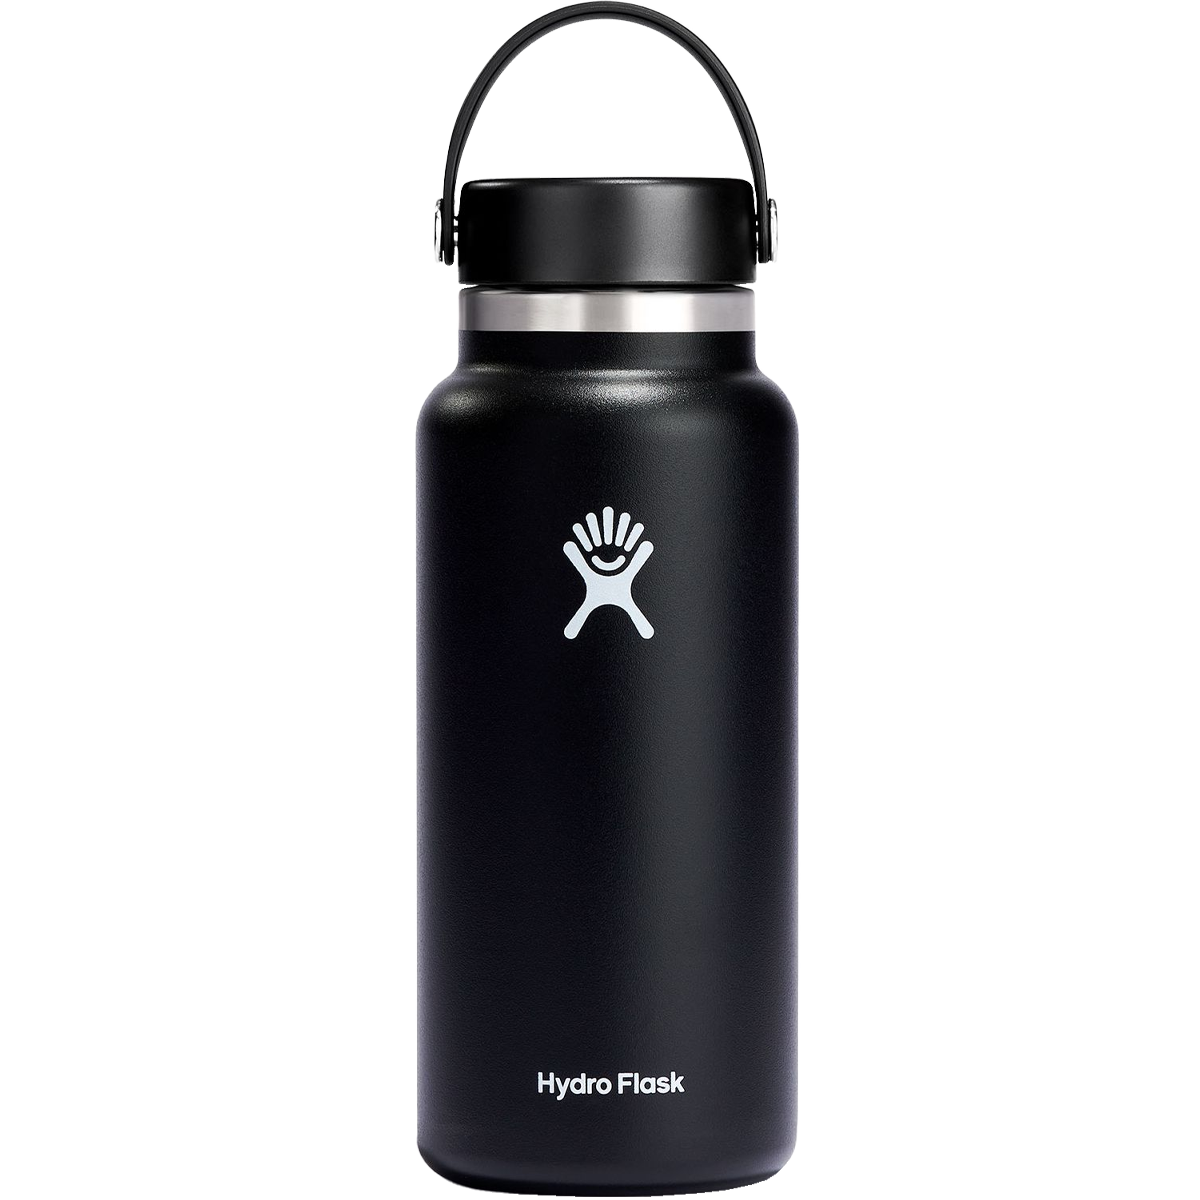 Hydro Flask 18 oz. Wide Mouth Bottle in Black